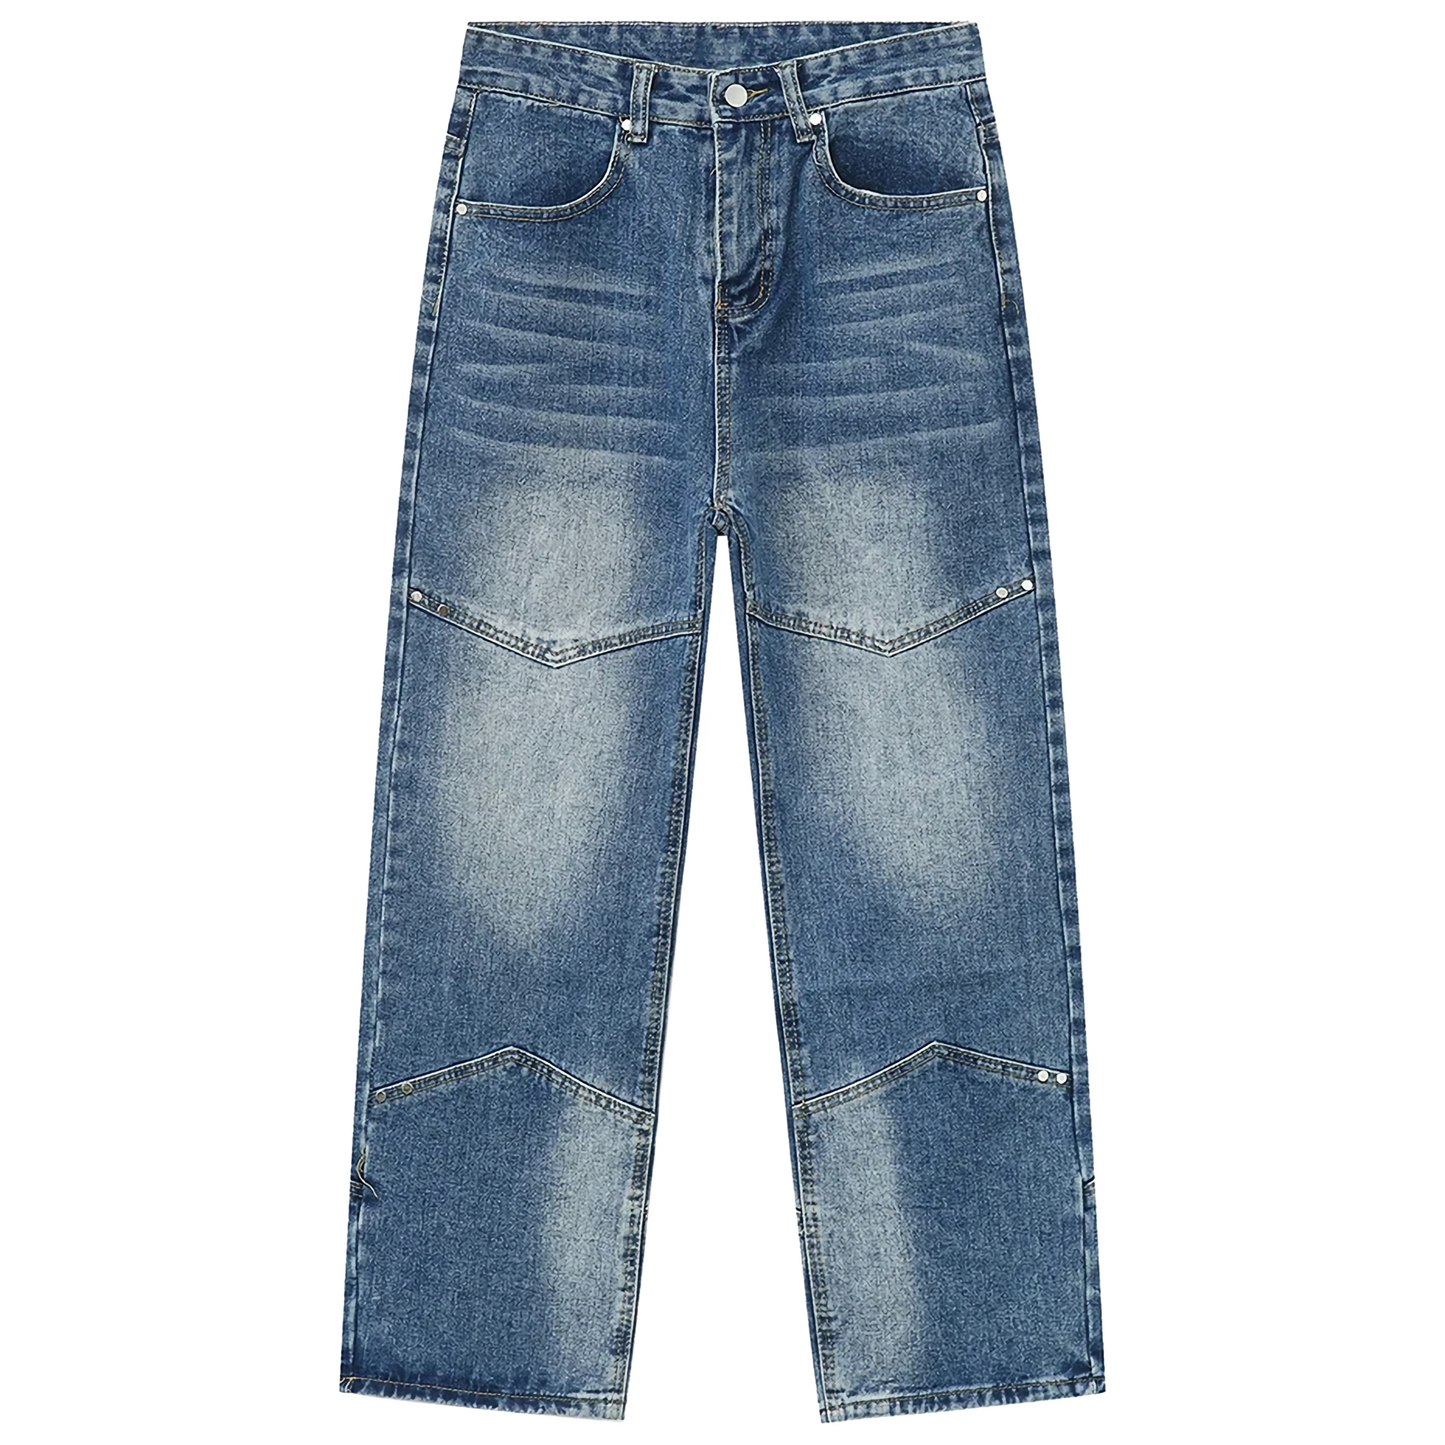 'Rhapsody' Patch-Panel Faded Denim Jeans